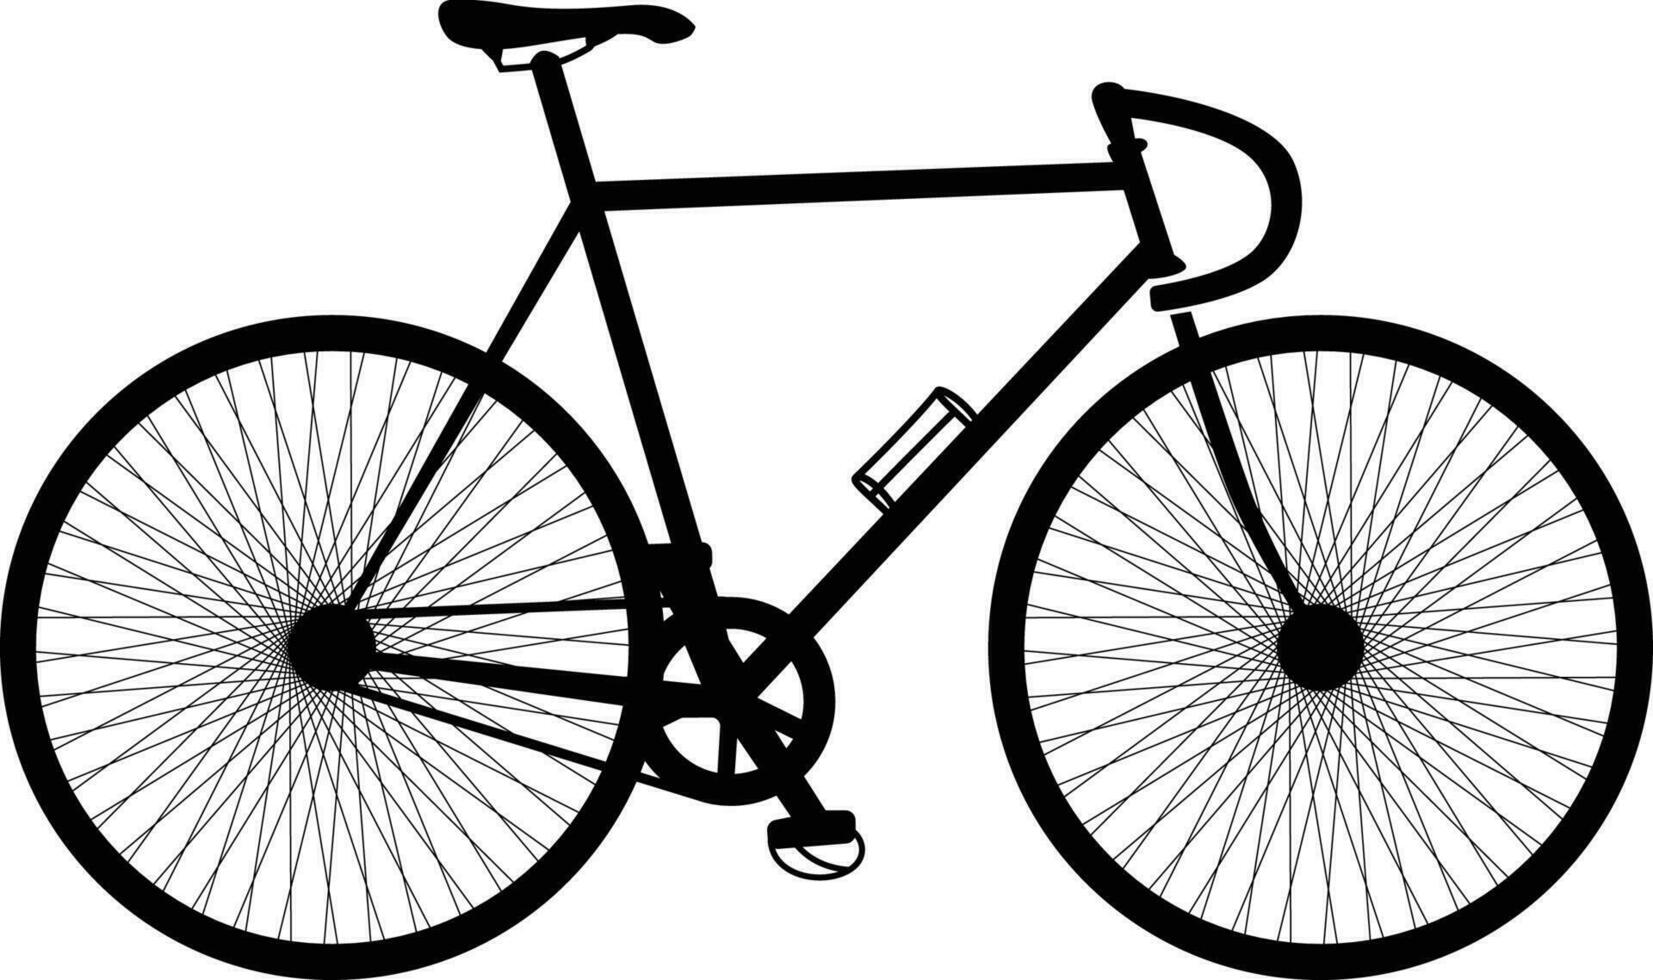 Abenteuer Touring Straße Fahrrad Touring schwarz und Weiß detailliert Vektor Illustration.